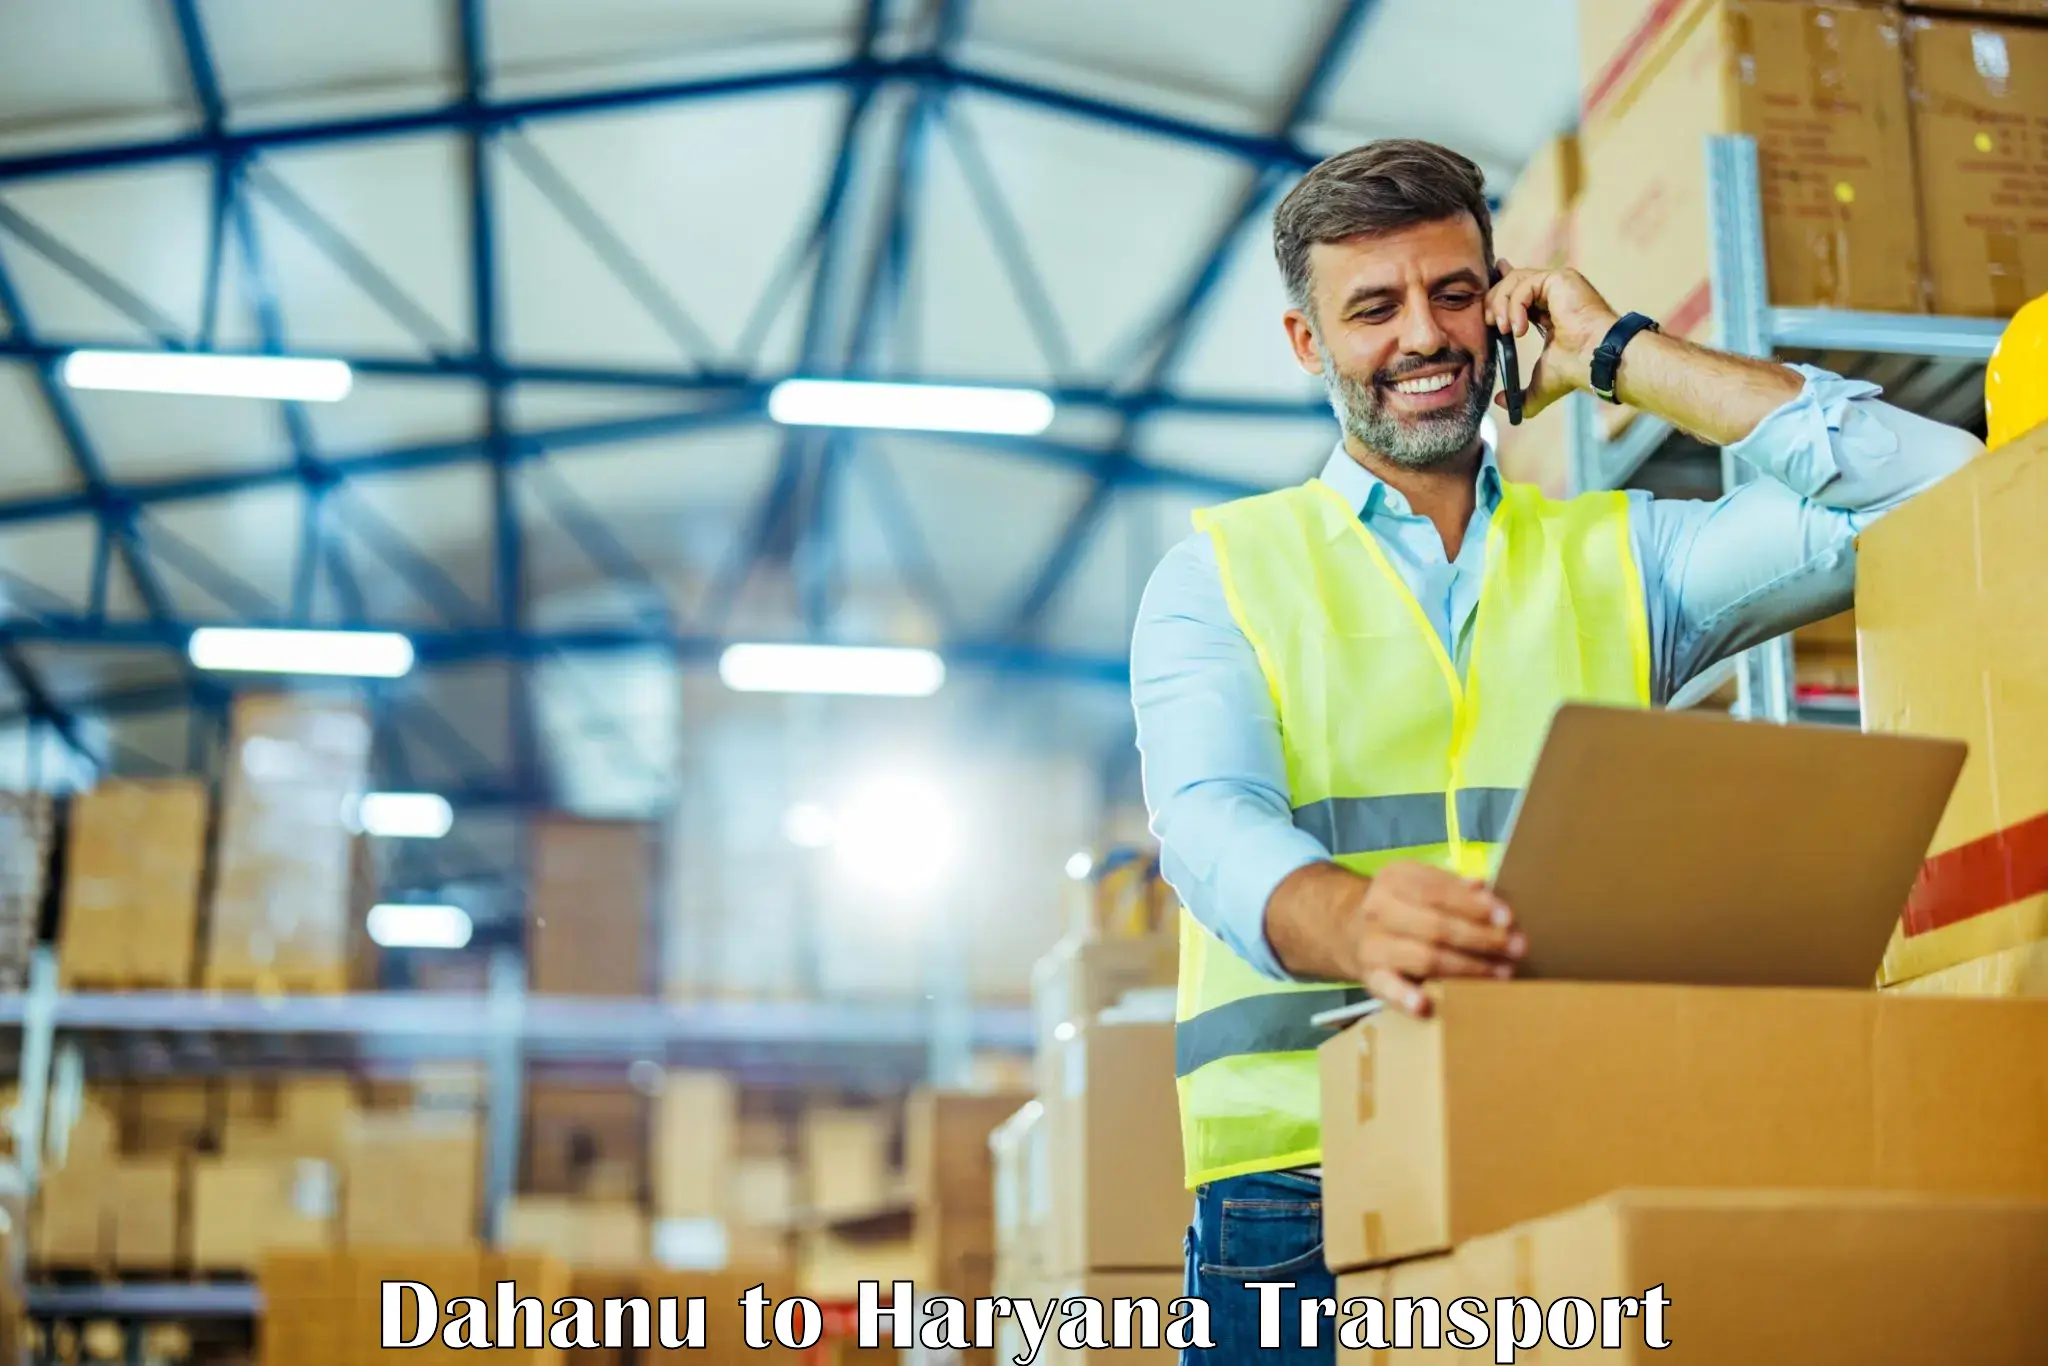 Logistics transportation services Dahanu to Panchkula